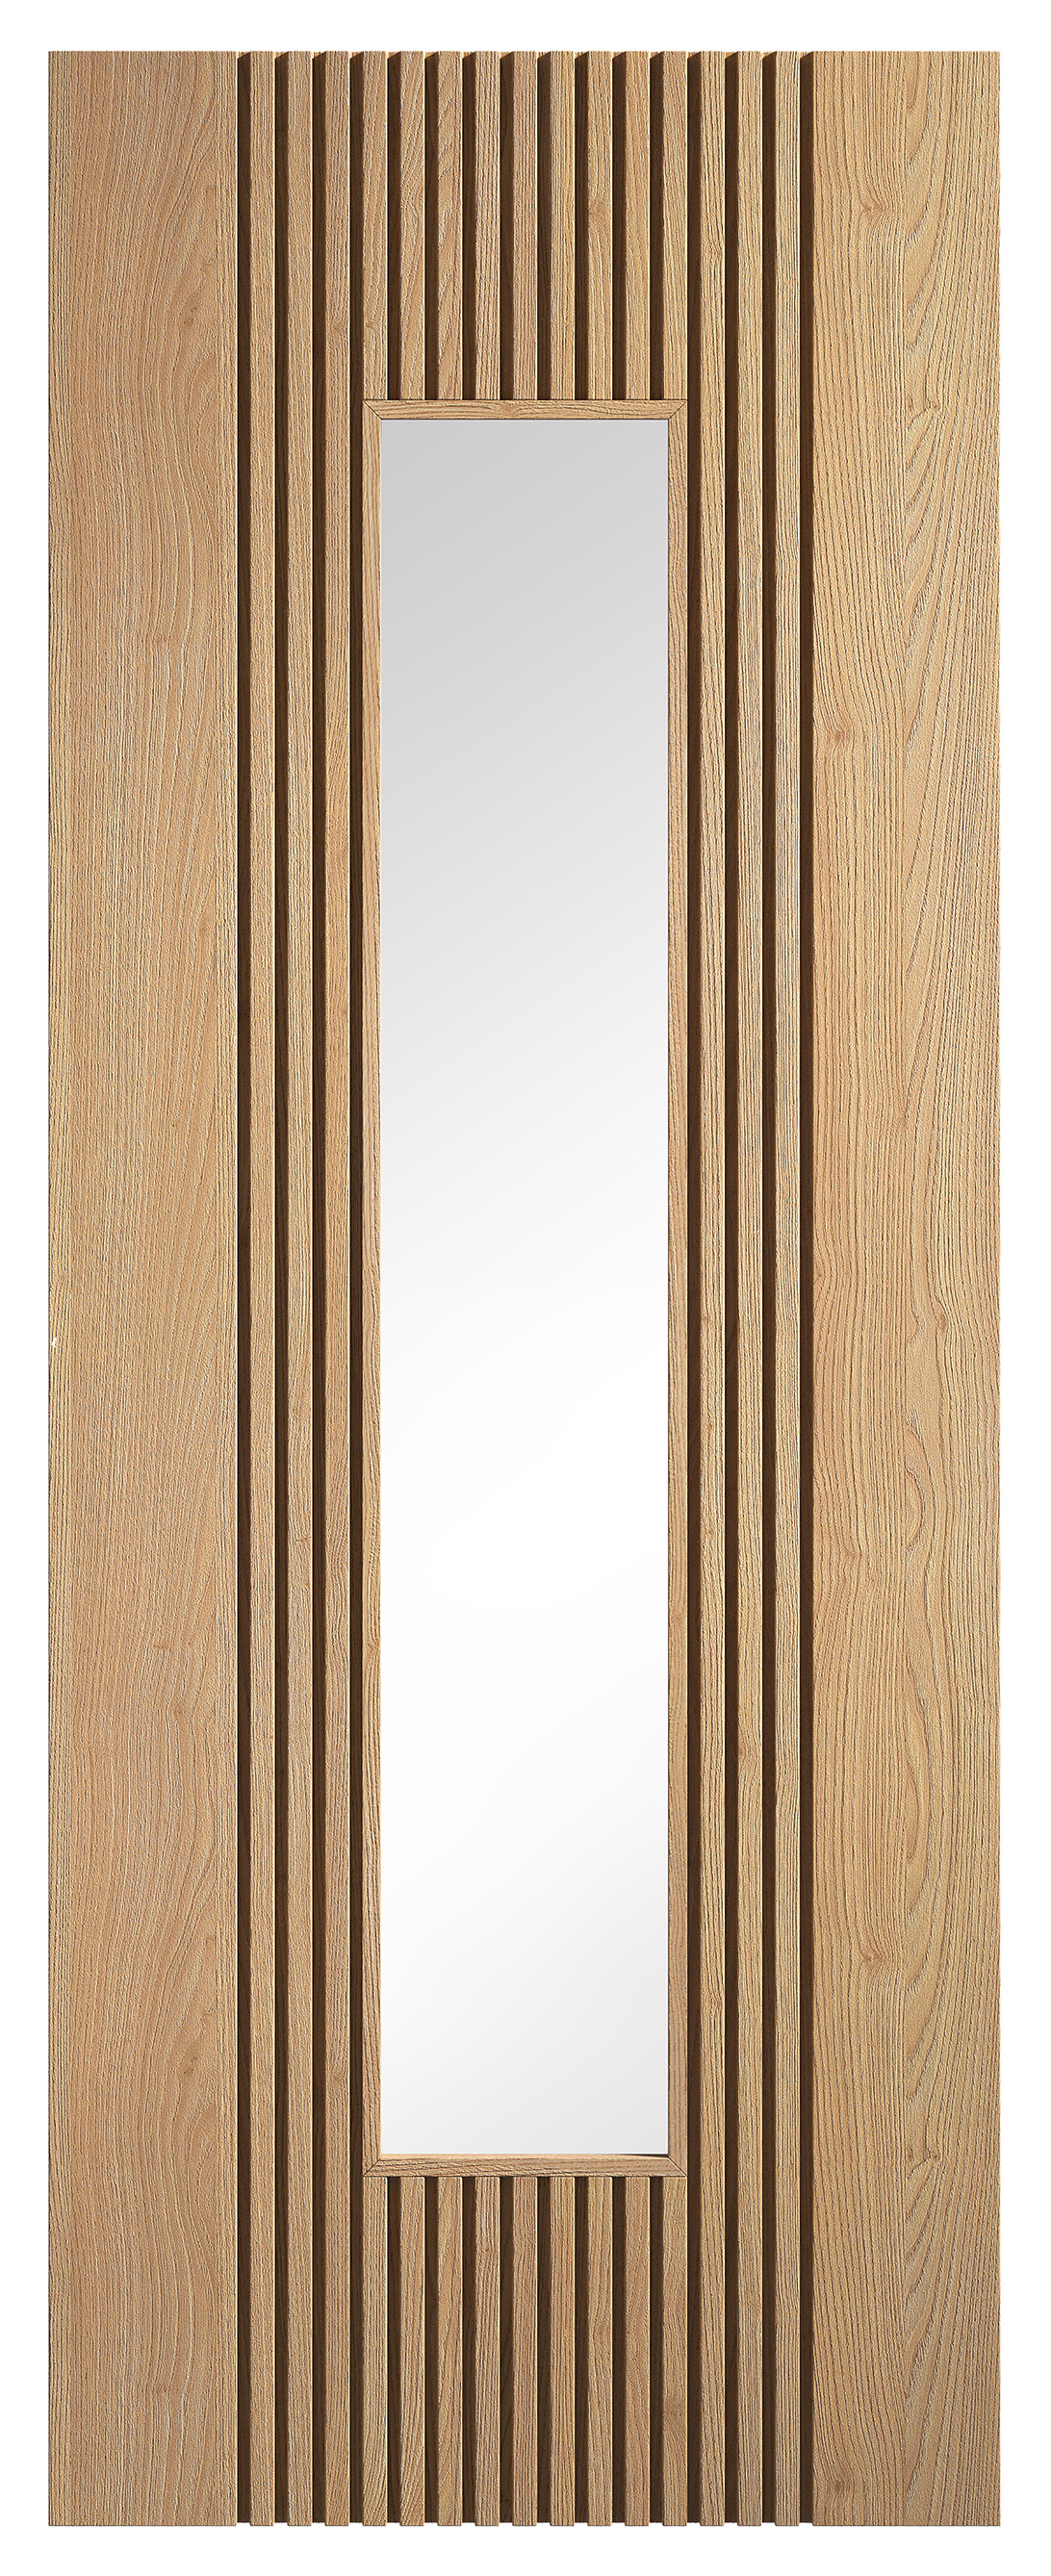 LPD Internal Sydney Clear Glazed Pre-Finished Oak Solid Core Door - 1981mm